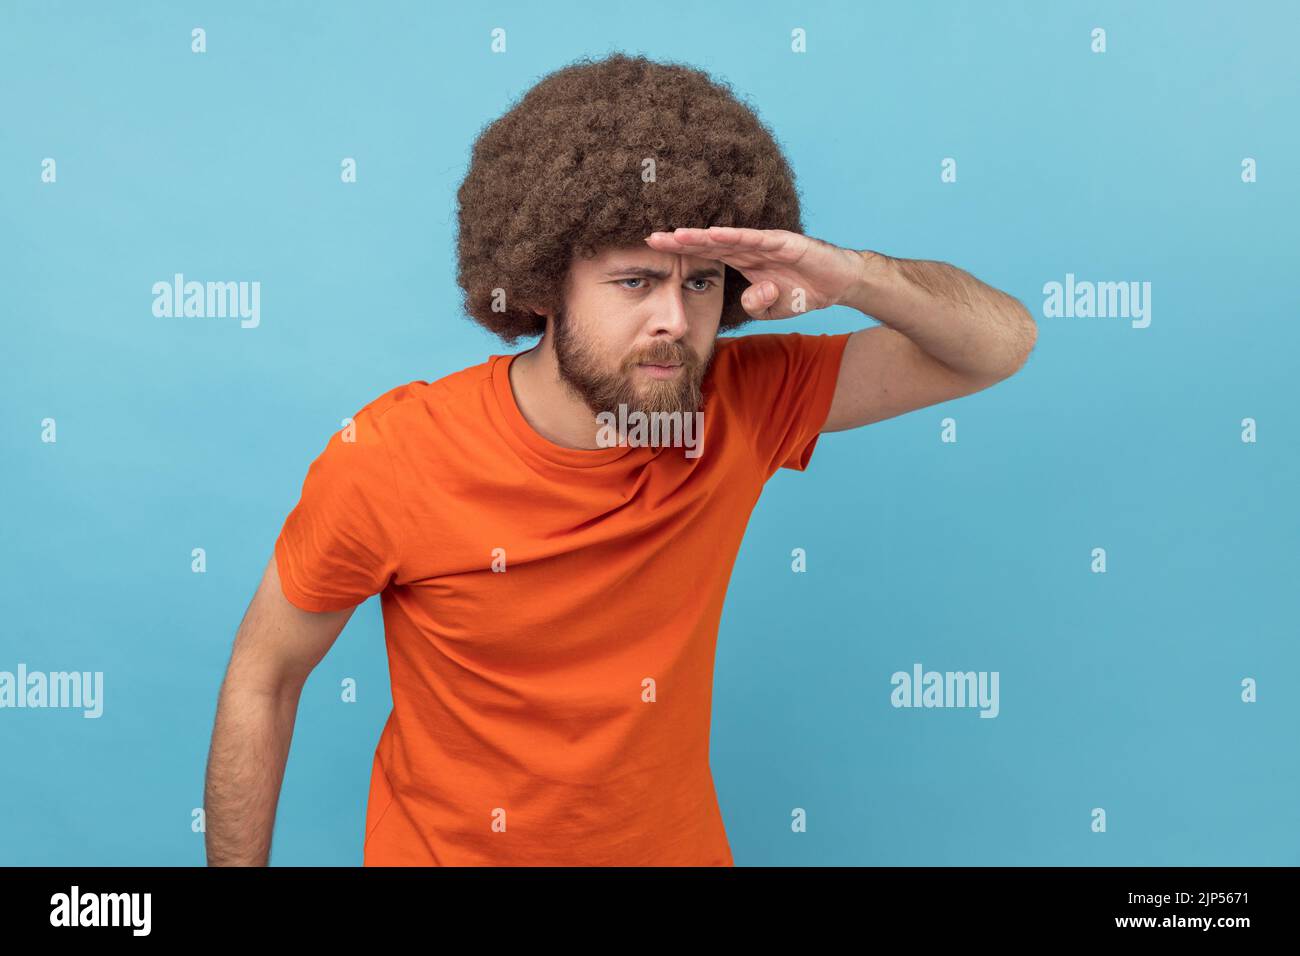 Ritratto dell'uomo con acconciatura afro che indossa una T-shirt arancione che guarda lontano con la mano sopra la testa, cercando con attenzione un futuro luminoso. Studio in interni isolato su sfondo blu. Foto Stock